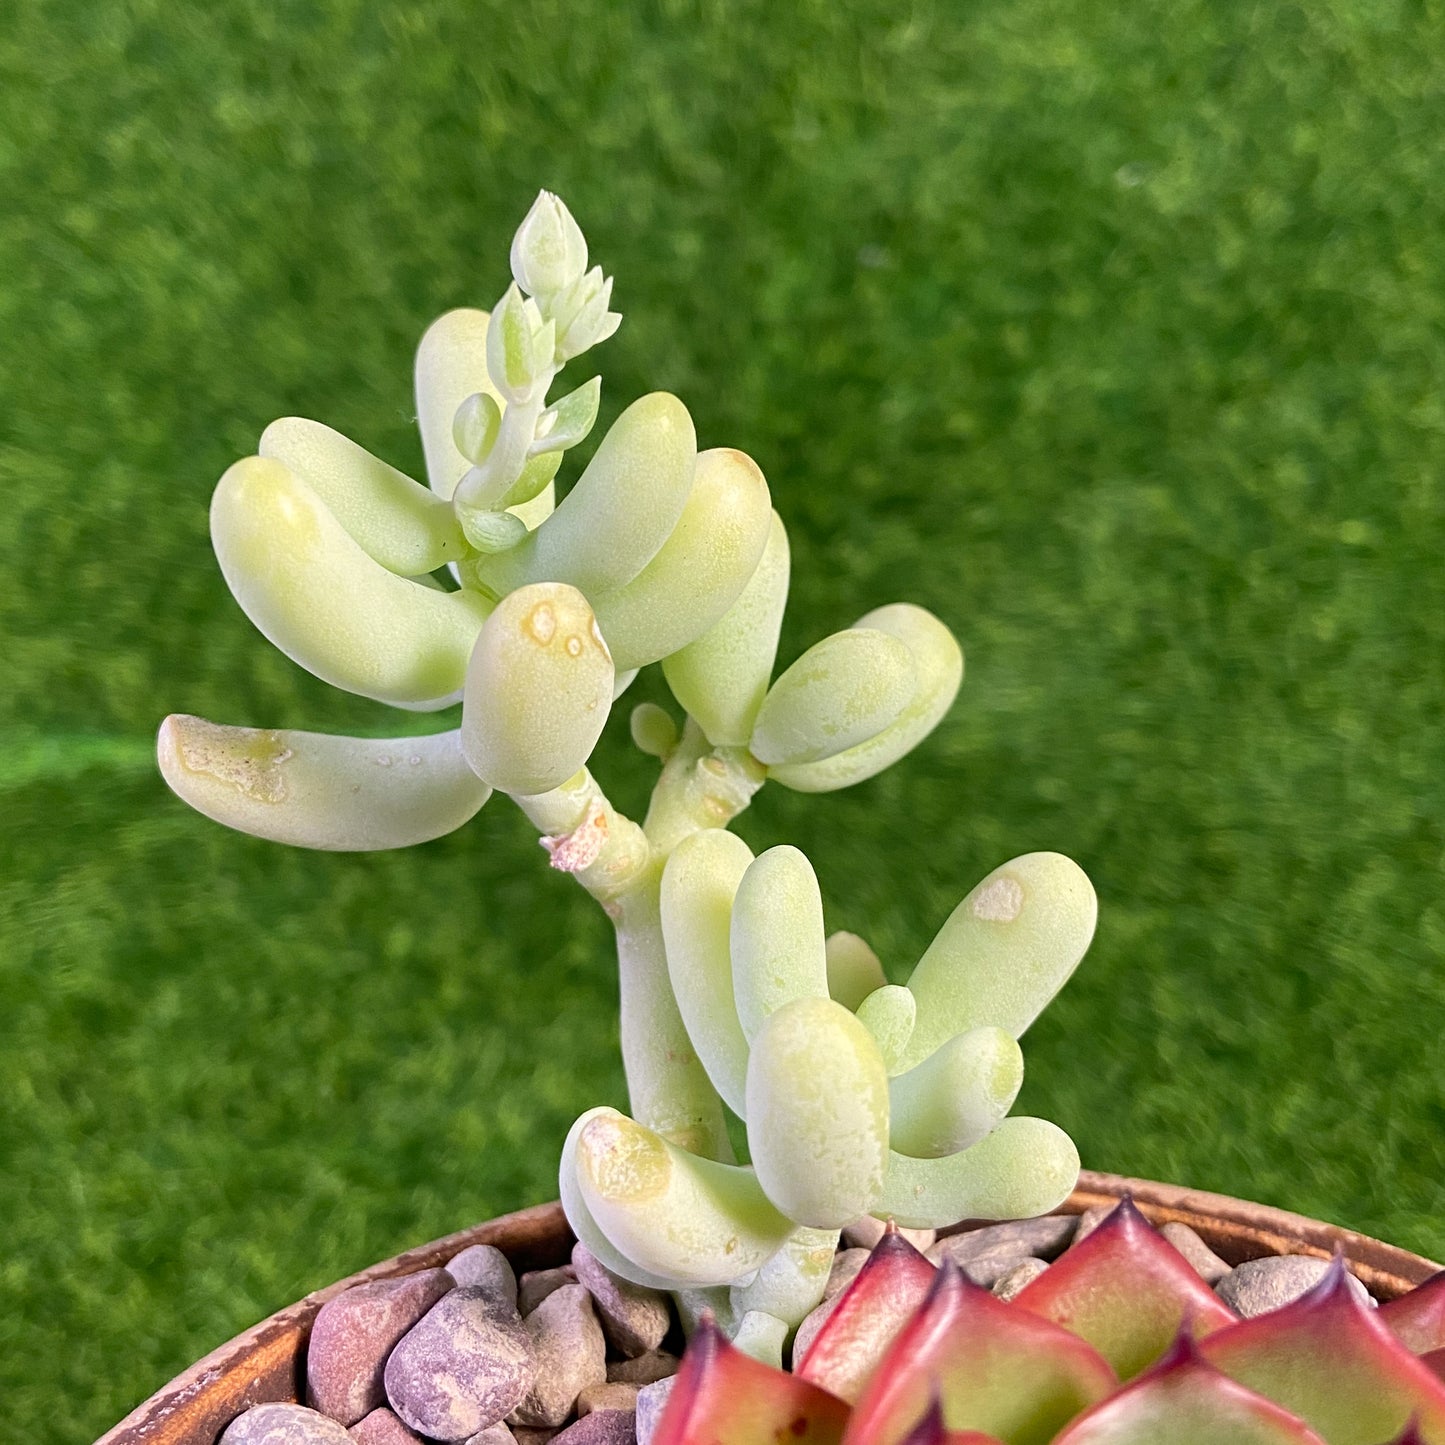 Assorted Succulent Collection (Echeveria Moonstone / Pachyphytum Werdermannii)